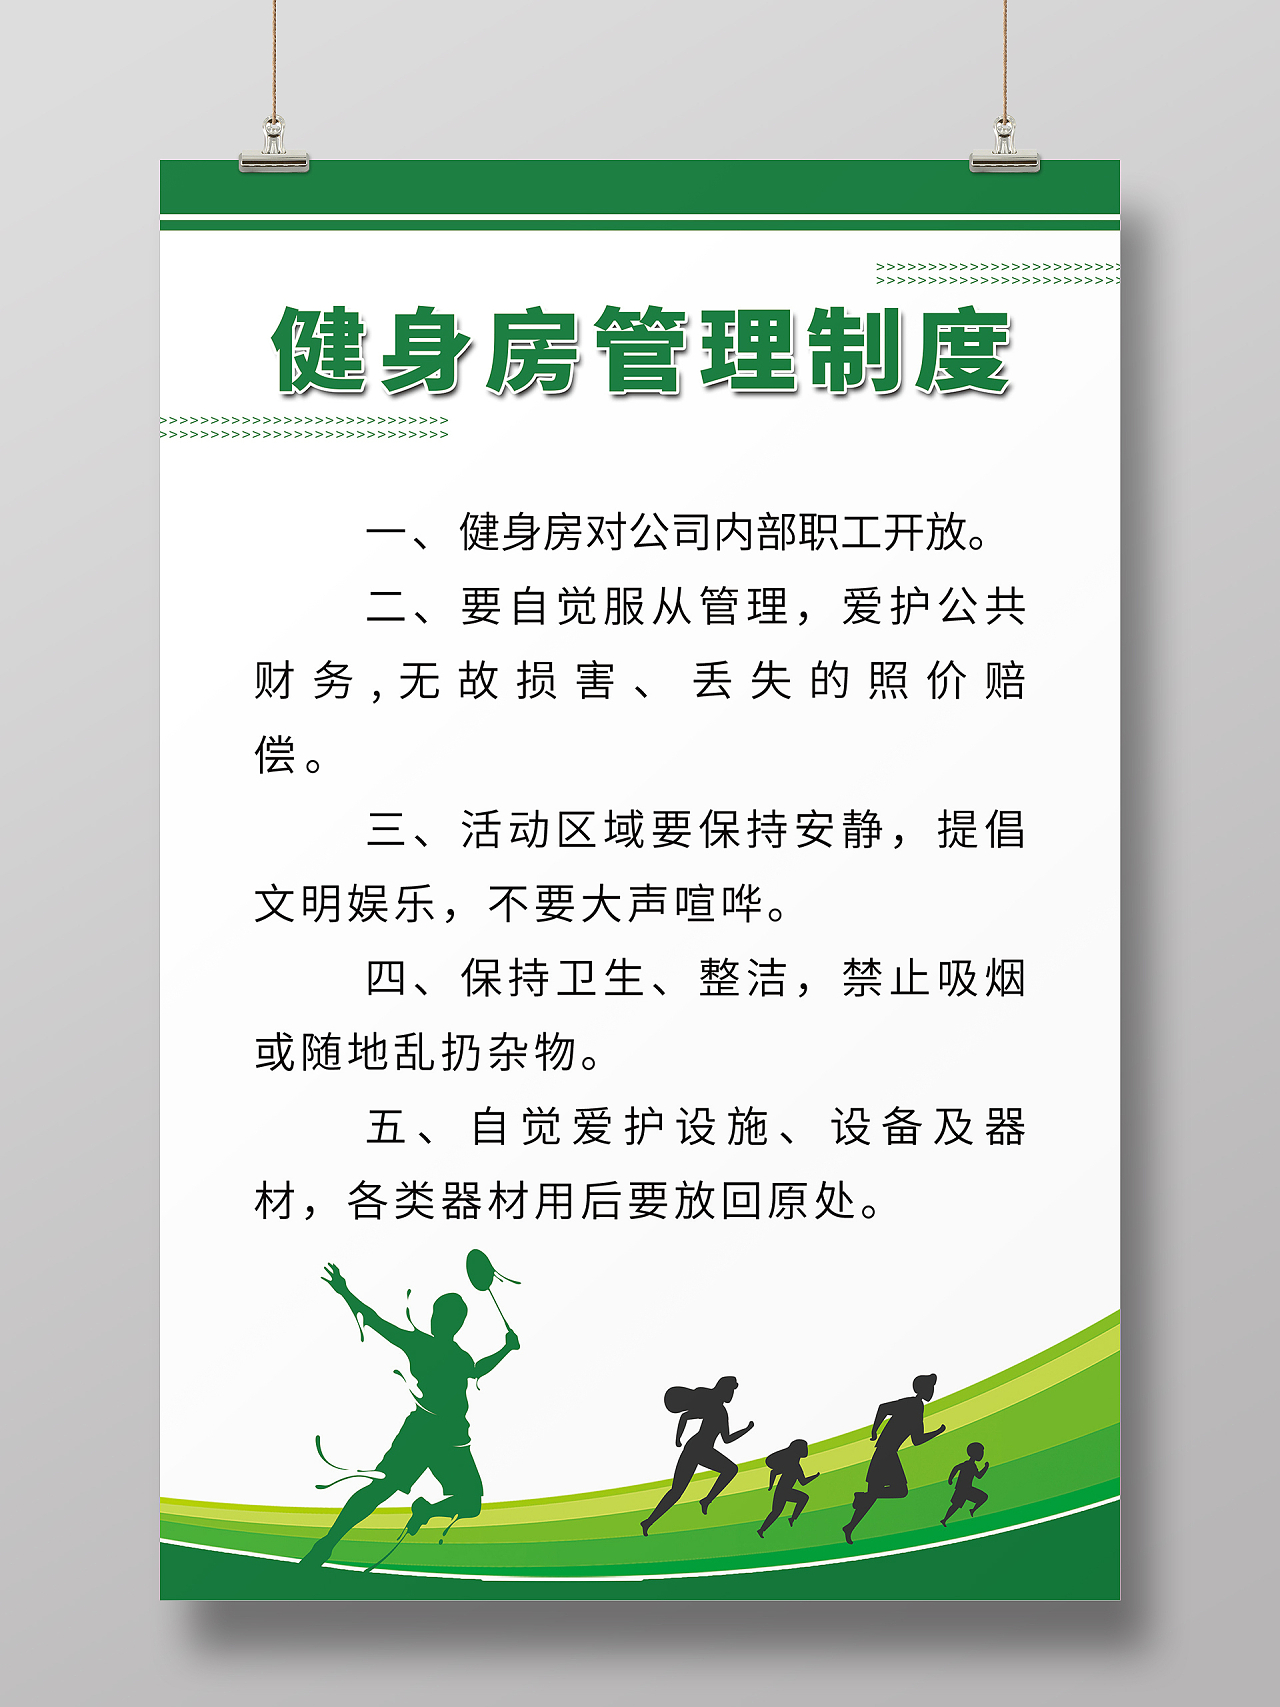 简约大气绿色系健身房管理制度展板健身房制度海报